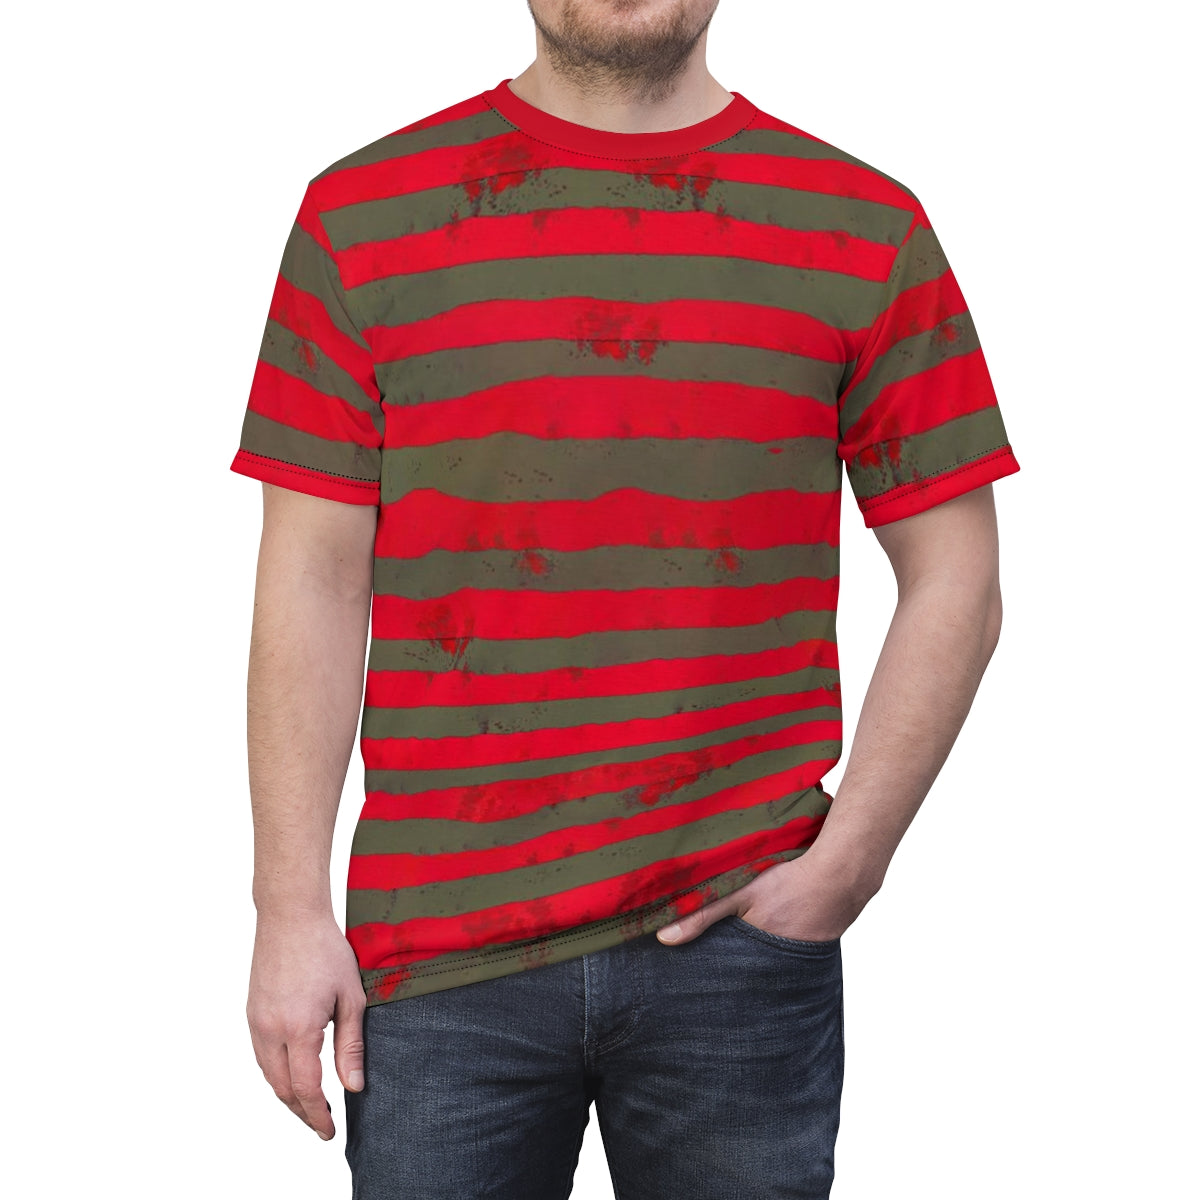 Freddy's Burns - Krueger | Horror Freak T-shirt